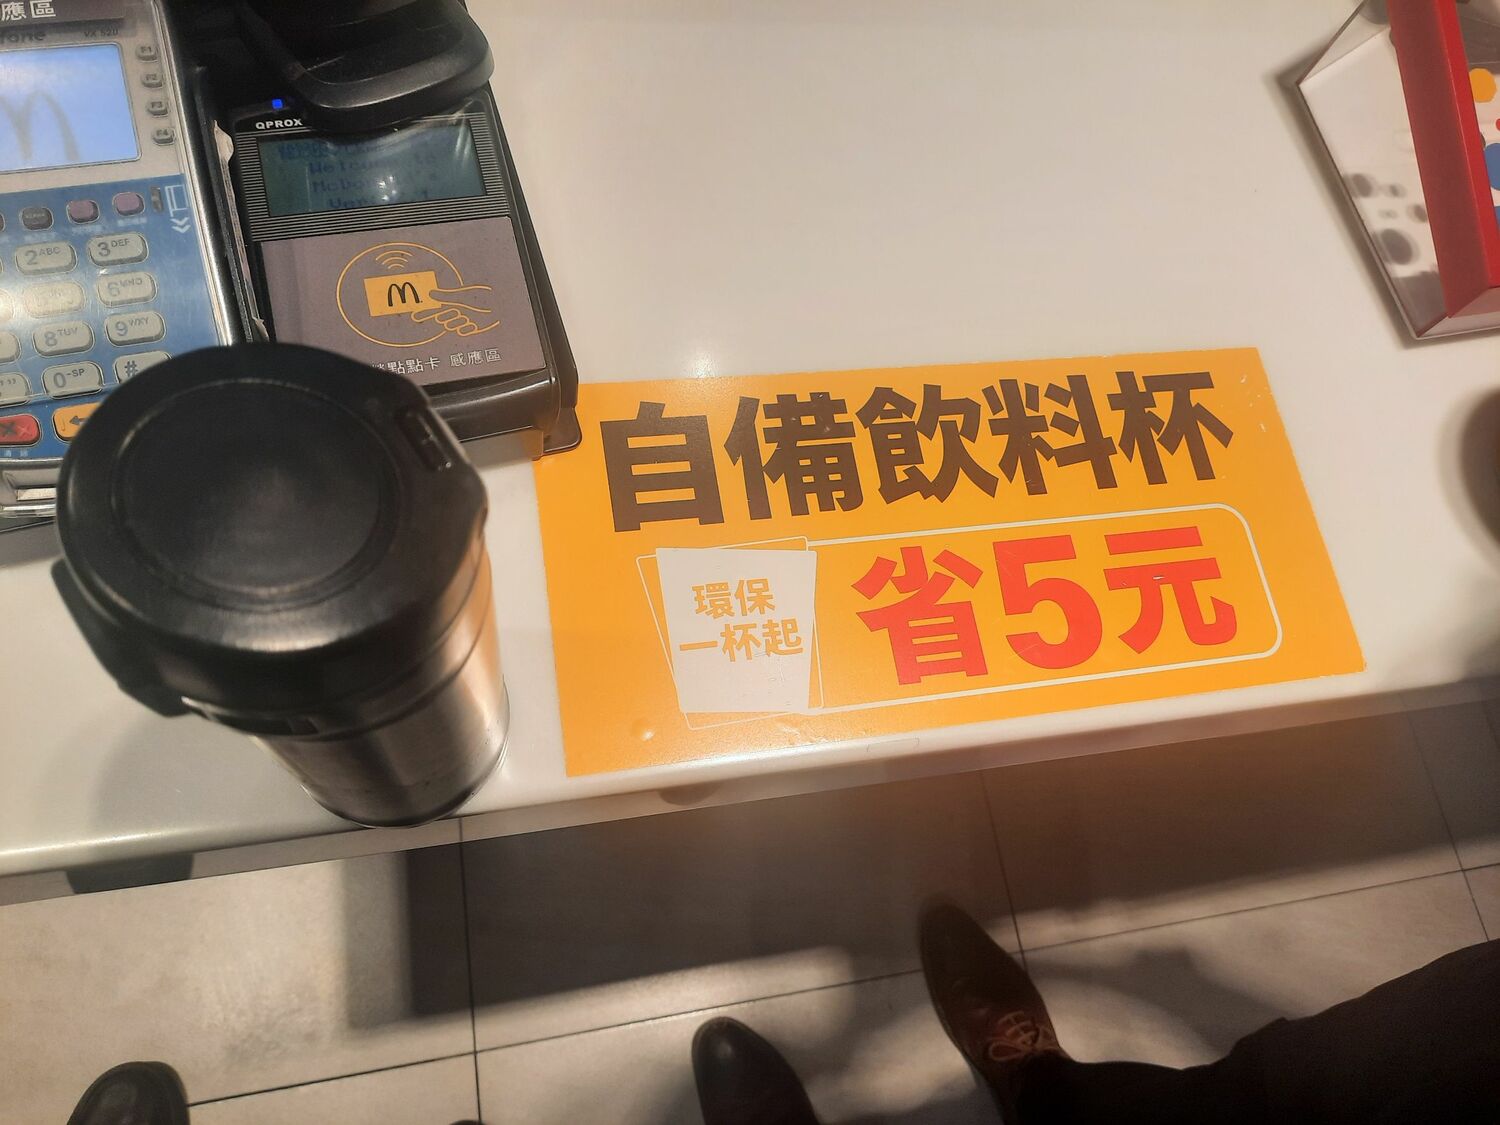 連鎖速食店業者於明顯處標示之「自備飲料杯省5元」字樣。   圖：新北市環保局提供